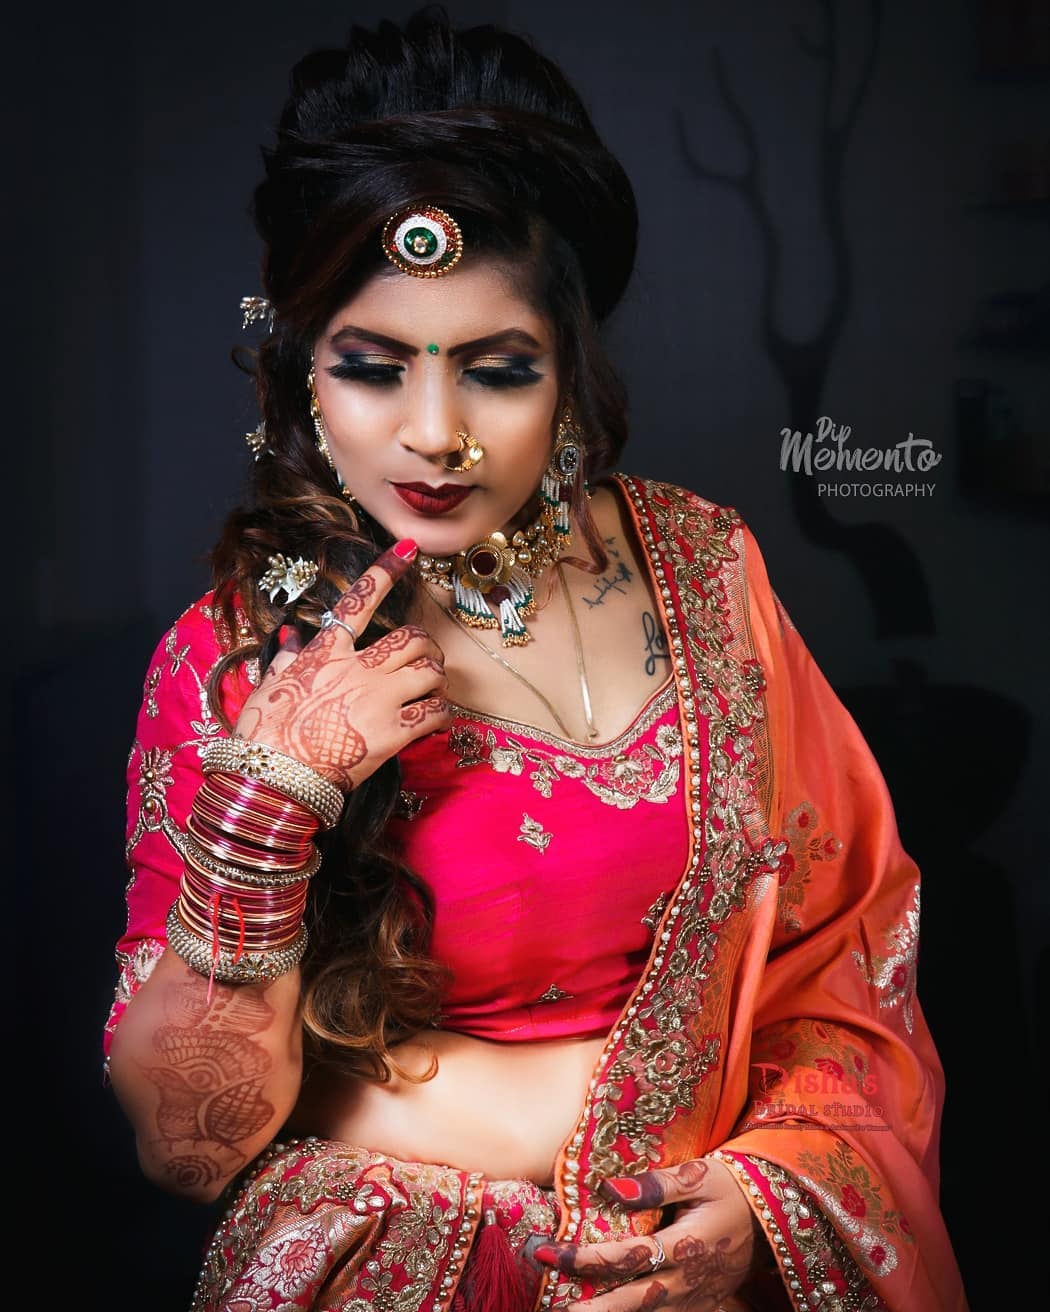 To me, the essence of truly modern makeup is the freedom to be yourself, to express who you are.
.
.
.
📸@dip_memento_photography
💄@dishasbridalstudio
.
.
 #bridesmaids #bridetobe
#coolbrides #bigfatindianwedding #bridemakeup #indianwedding #photography #weddings #indianwedding #bridemakeup
#dipmementophotography #9924227745 #loveformakeup  #makeupartist #makeup #ahmedabad #candidportraits #indianbride #indianfashionblogger #marwadistyle #rajasthanibride #brides #funbrides
.
.
@wedzo.in @indianstreetfashion @weddingz.in @indian_wedding_bliss
@dulhaanddulhan @thebridesofindia @indianweddings @weddingdream @indianweddingbuzz @shaadisaga @zo_wed @desiclassybrides @weddingwireindia @indiagramwedding @shaadisaga @indian__wedding @thebridesofindia
@weddingsutra @wedmegood @bridalaffairind @theweddingbrigade @weddingplz @weddingfables @indian_wedding_inspiration @eventilaindia @_punjabi_weddings